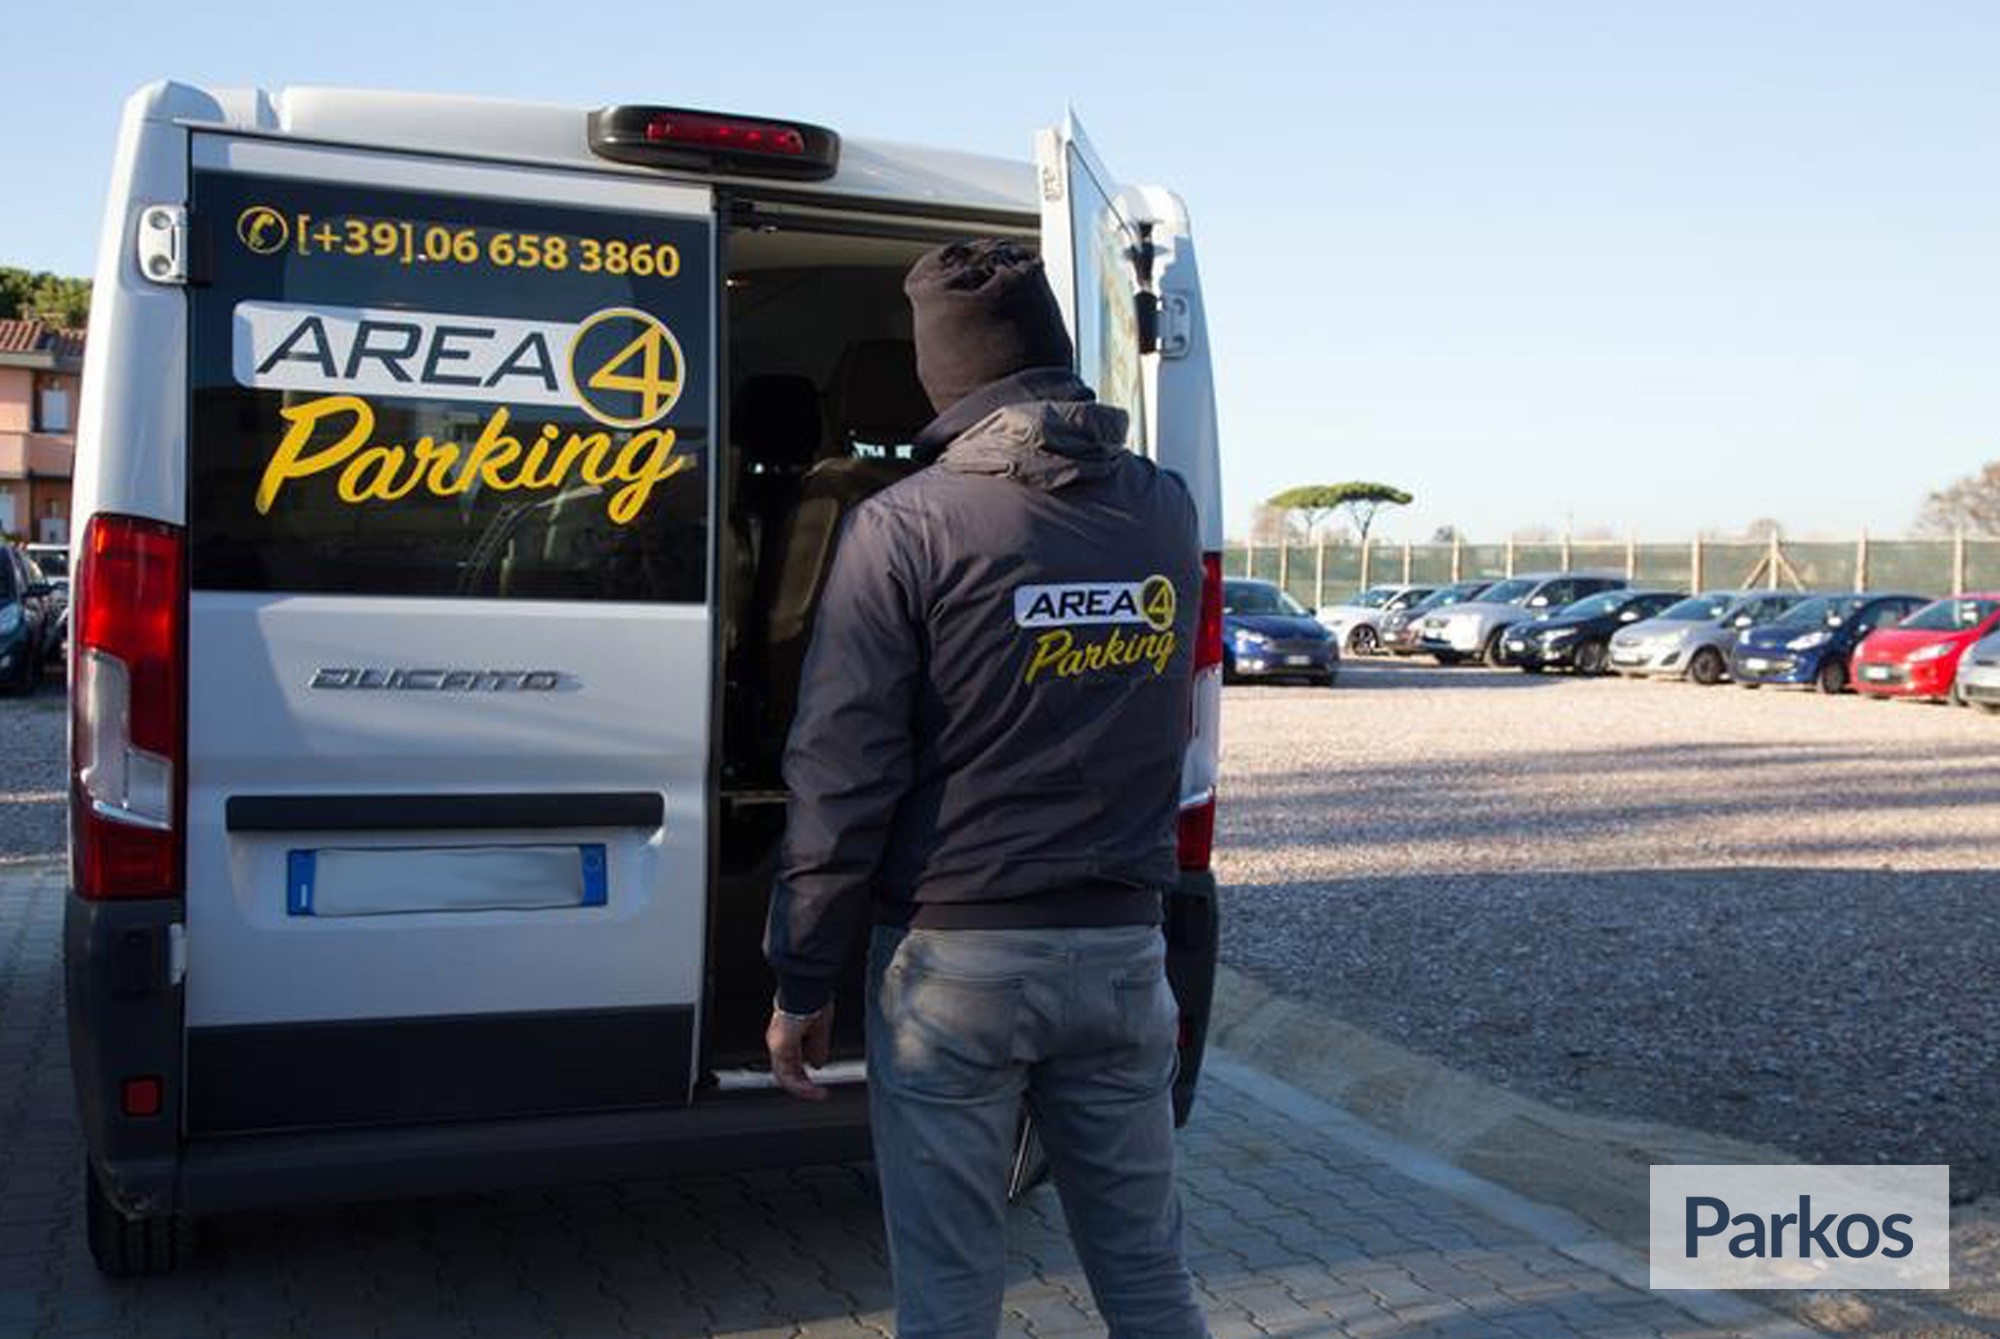 Area 4 Parking (Paga online) - Parcheggio Fiumicino - picture 1